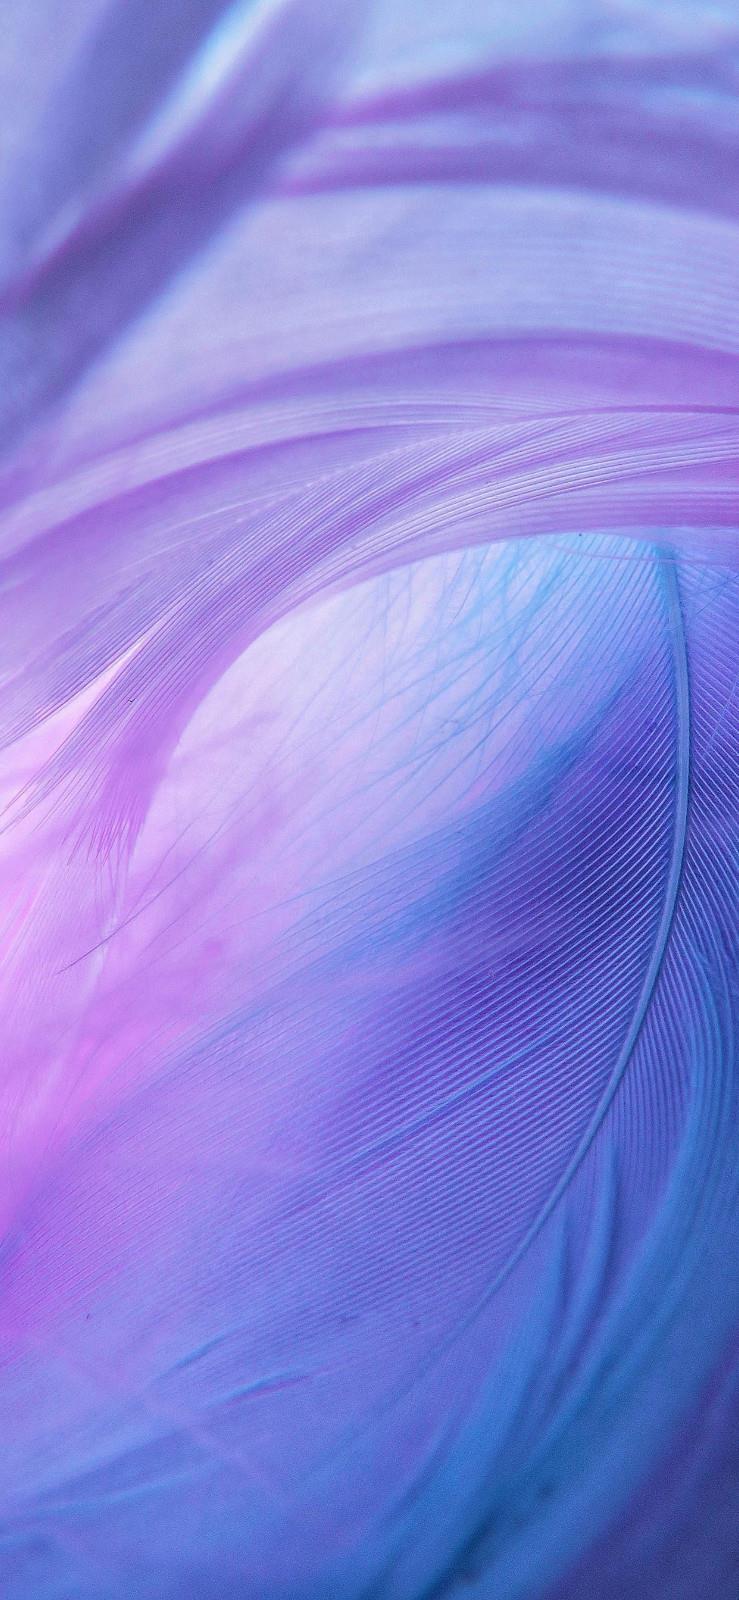 清新简约的紫色系风景手机背景壁纸图片